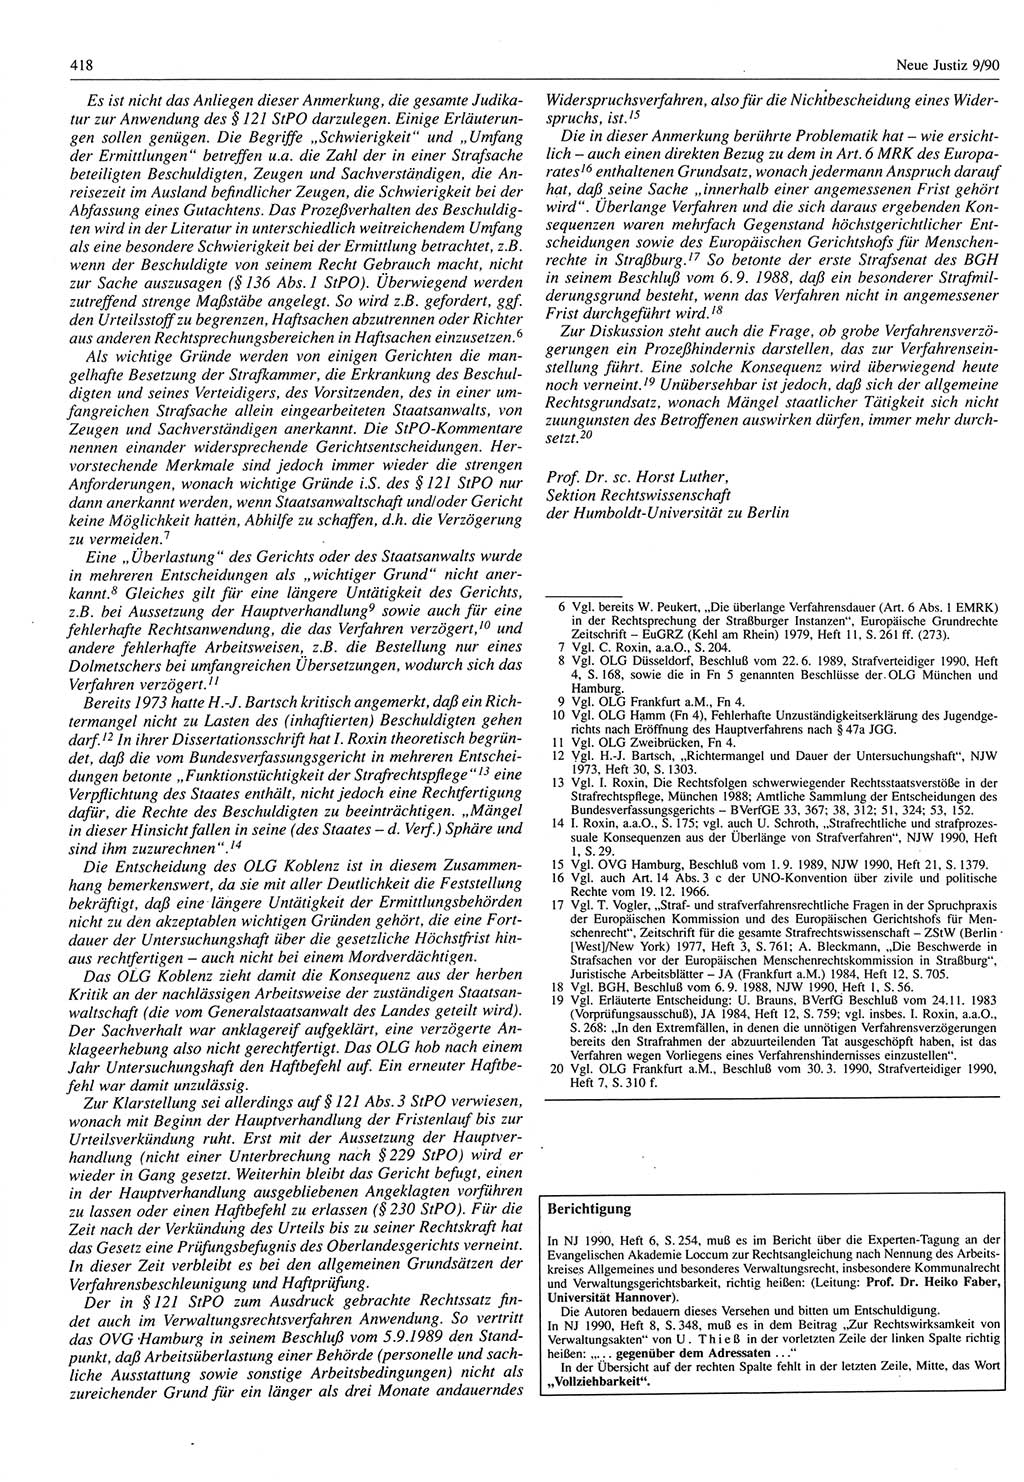 Neue Justiz (NJ), Zeitschrift für Rechtsetzung und Rechtsanwendung [Deutsche Demokratische Republik (DDR)], 44. Jahrgang 1990, Seite 418 (NJ DDR 1990, S. 418)